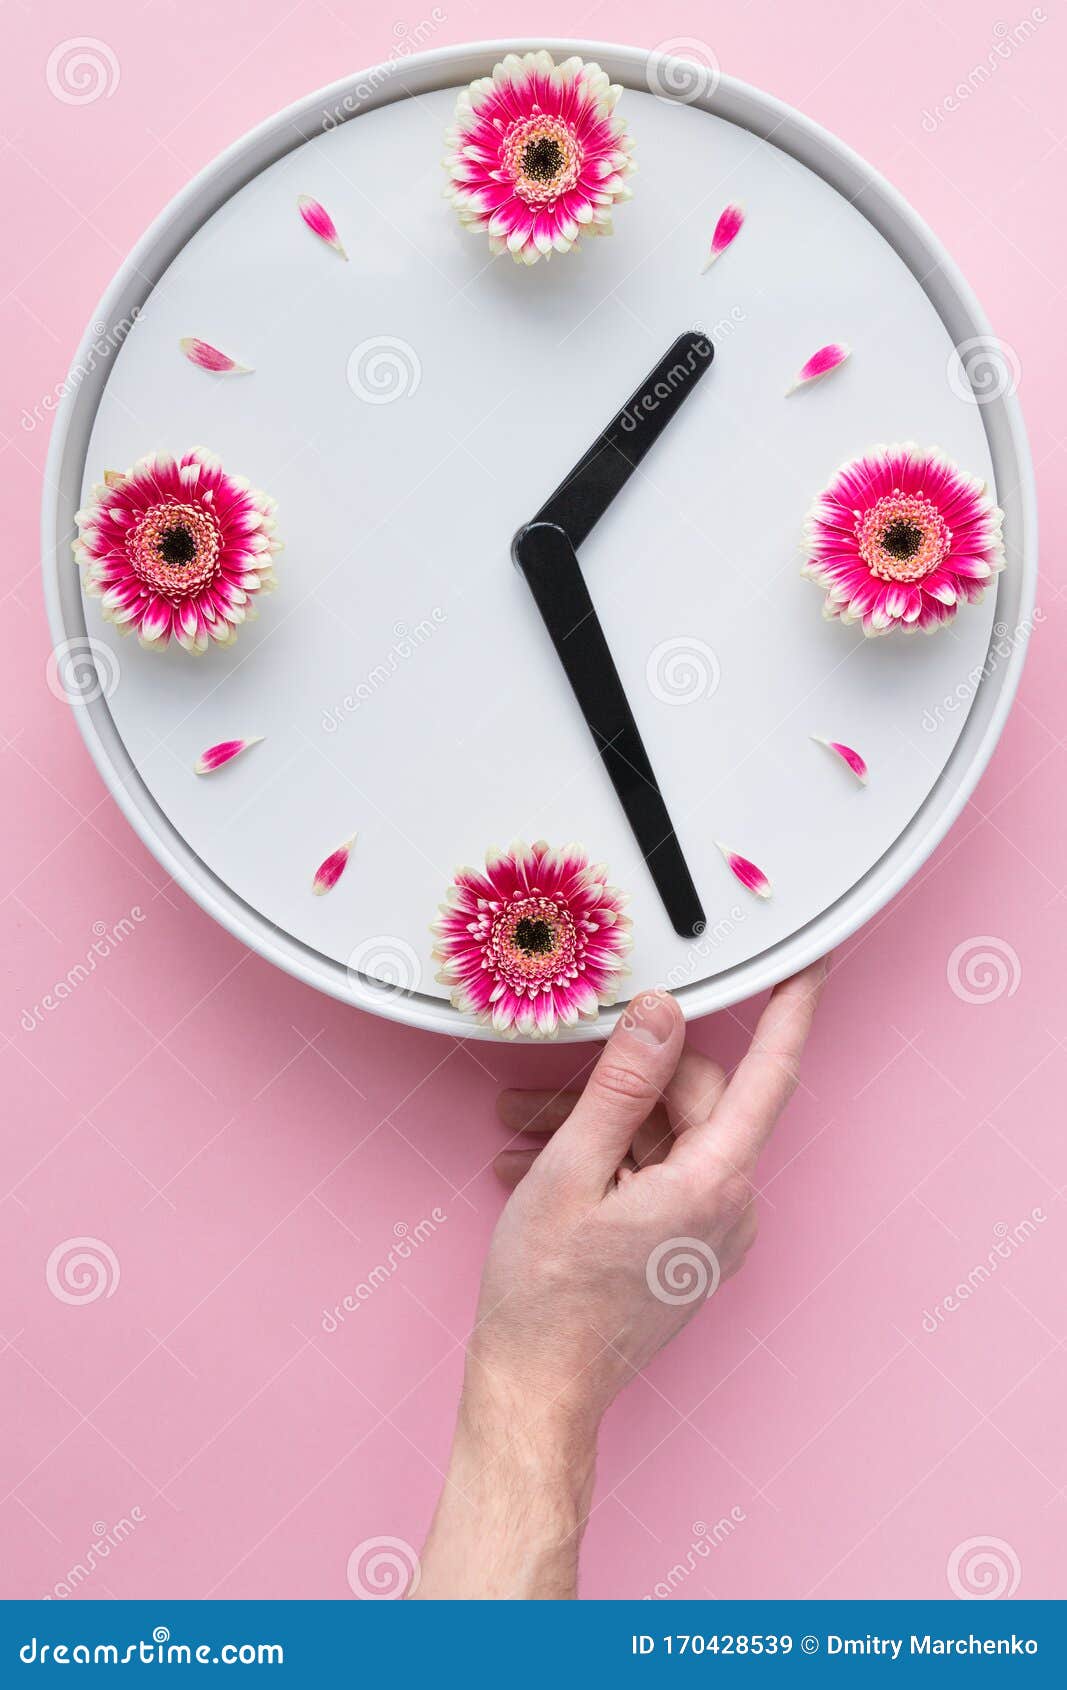 coger un resfriado experimental Naturaleza Cheap >relojes por mayor en flores big sale - OFF 60%